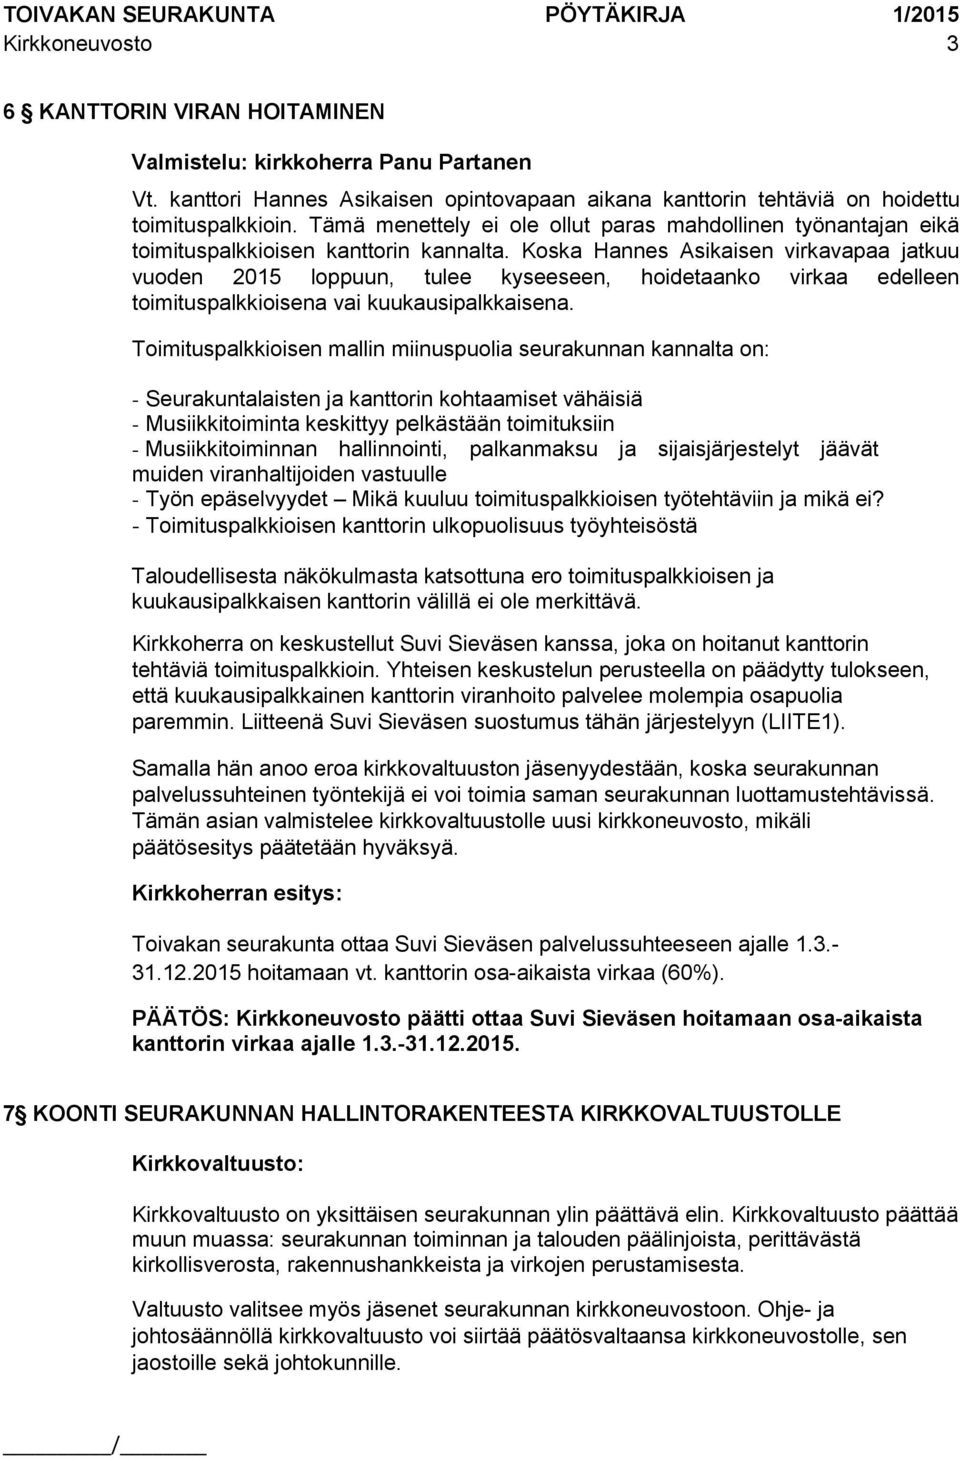 Koska Hannes Asikaisen virkavapaa jatkuu vuoden 2015 loppuun, tulee kyseeseen, hoidetaanko virkaa edelleen toimituspalkkioisena vai kuukausipalkkaisena.